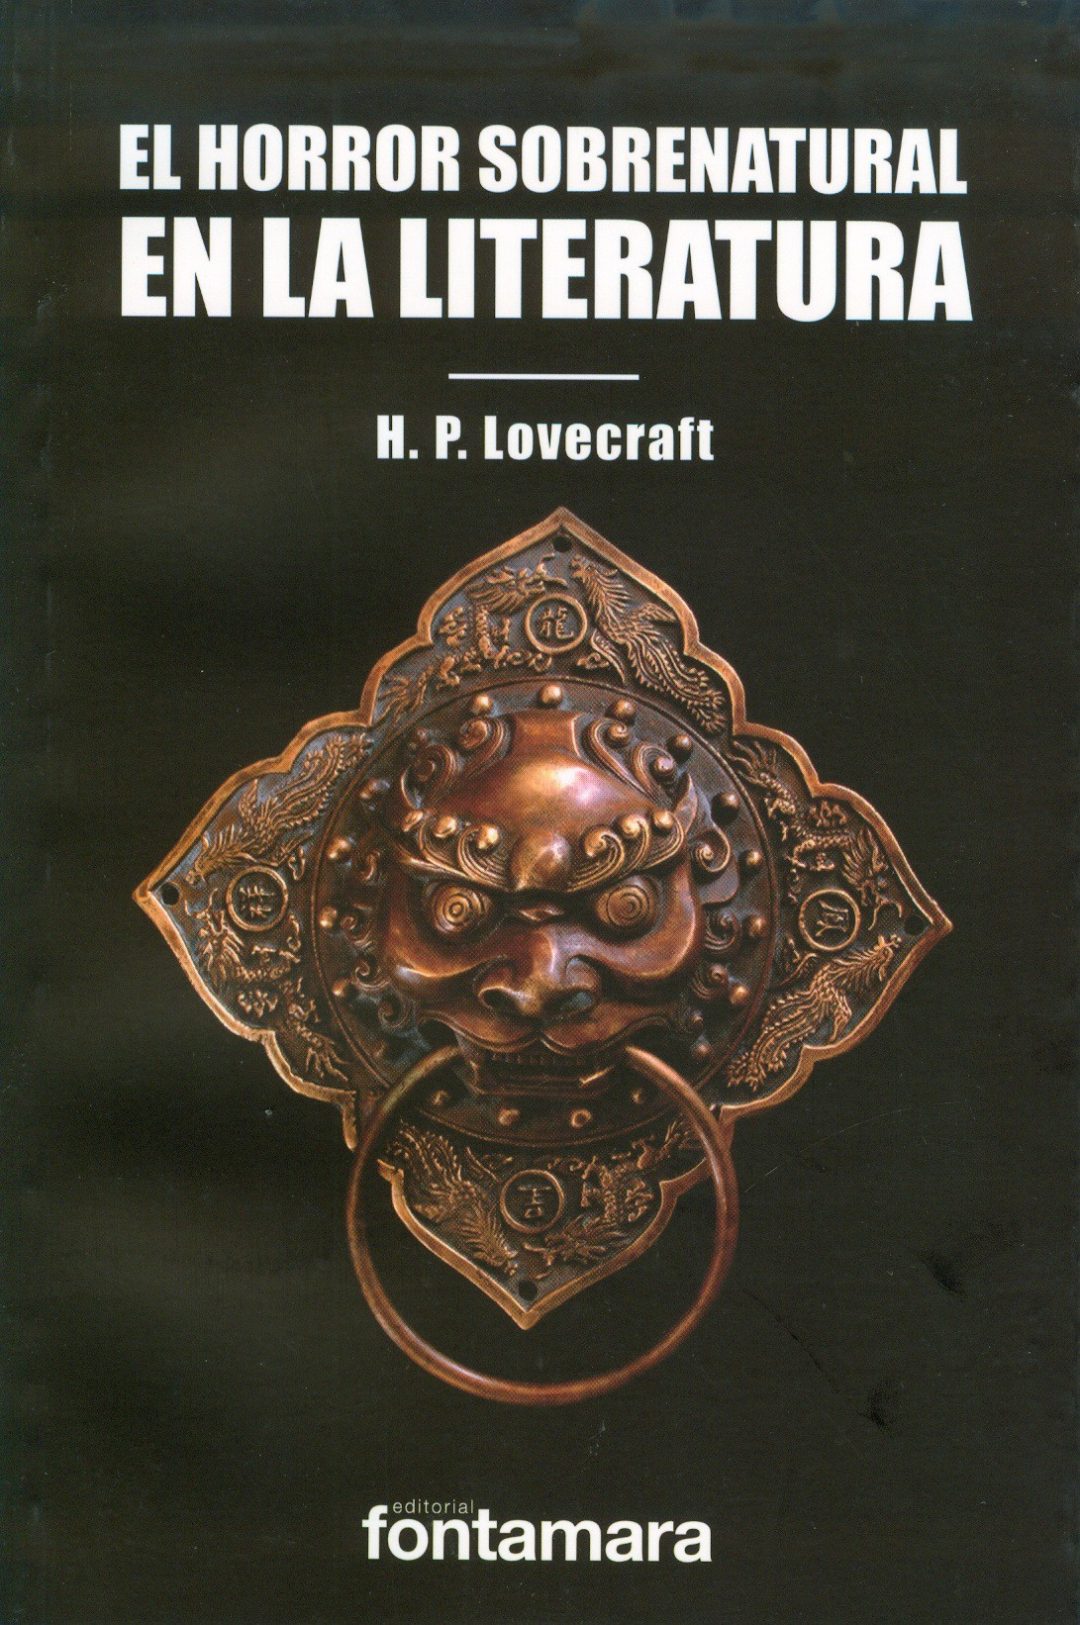 El horror sobrenatural en la literatura y otros escritos teór... by H.P. Lovecraft